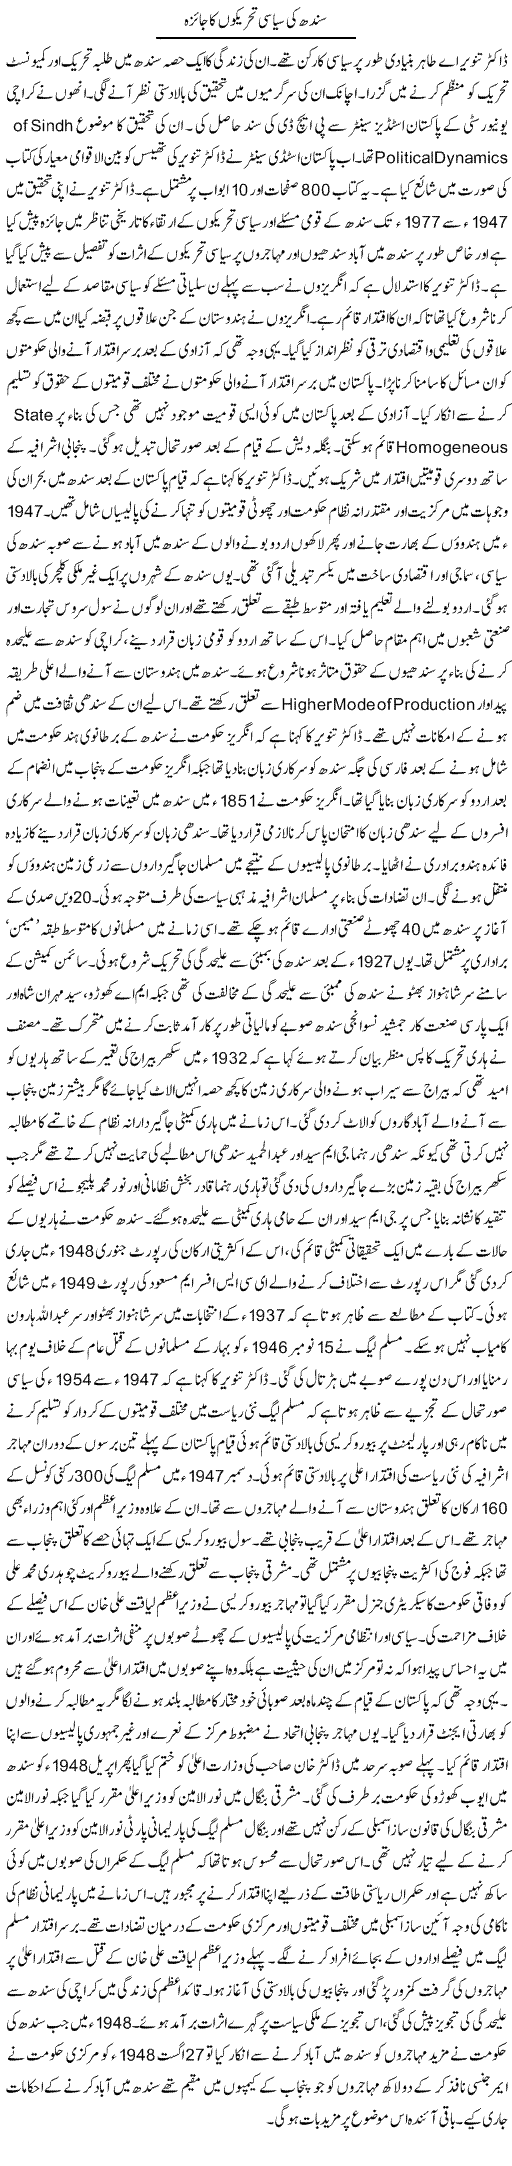 Sindh Tehreeken Express Column Tauseef Ahmed 11 August 2010